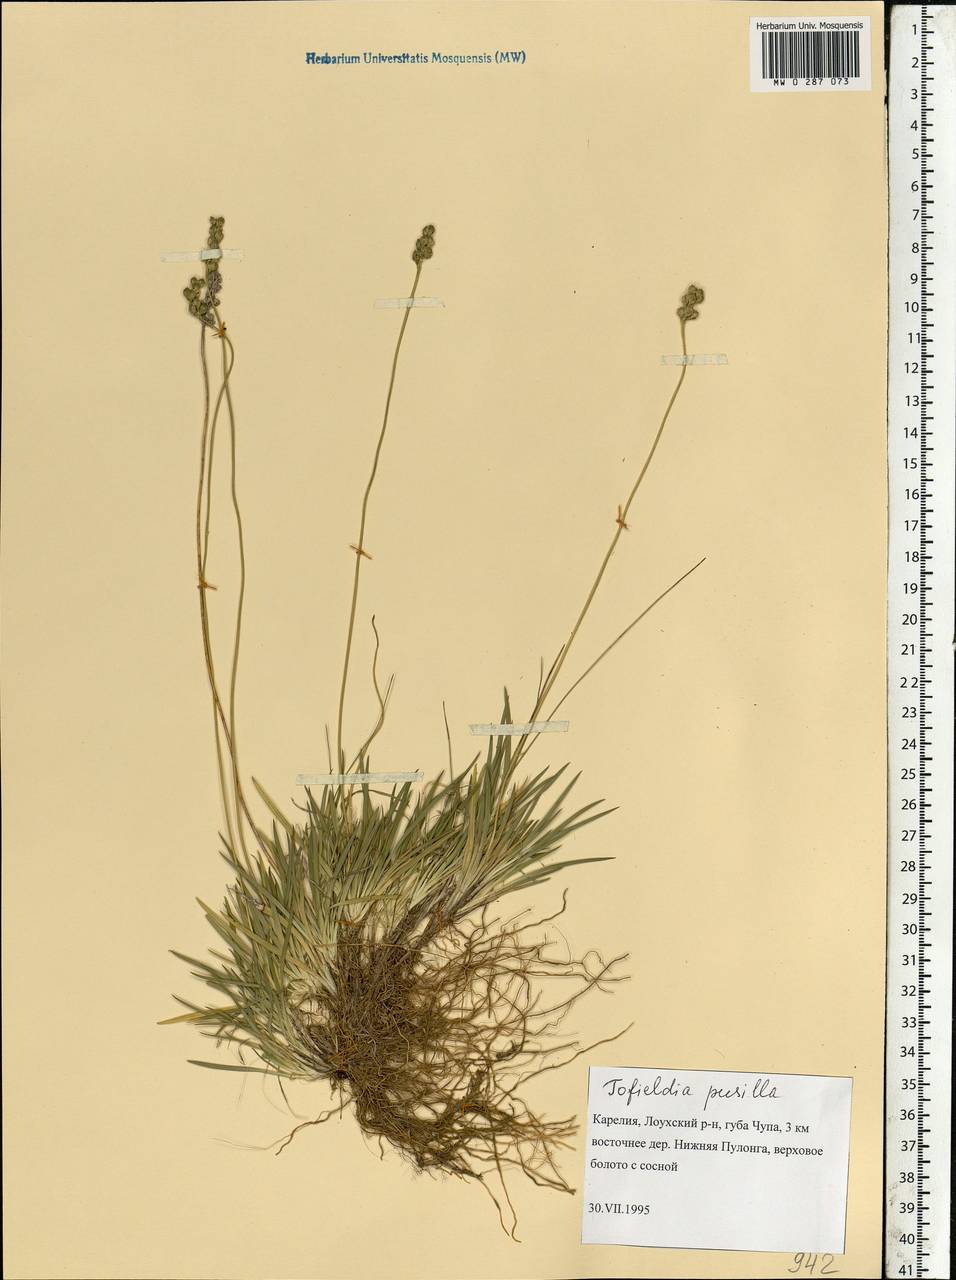 Tofieldia pusilla (Michx.) Pers., Eastern Europe, Northern region (E1) (Russia)